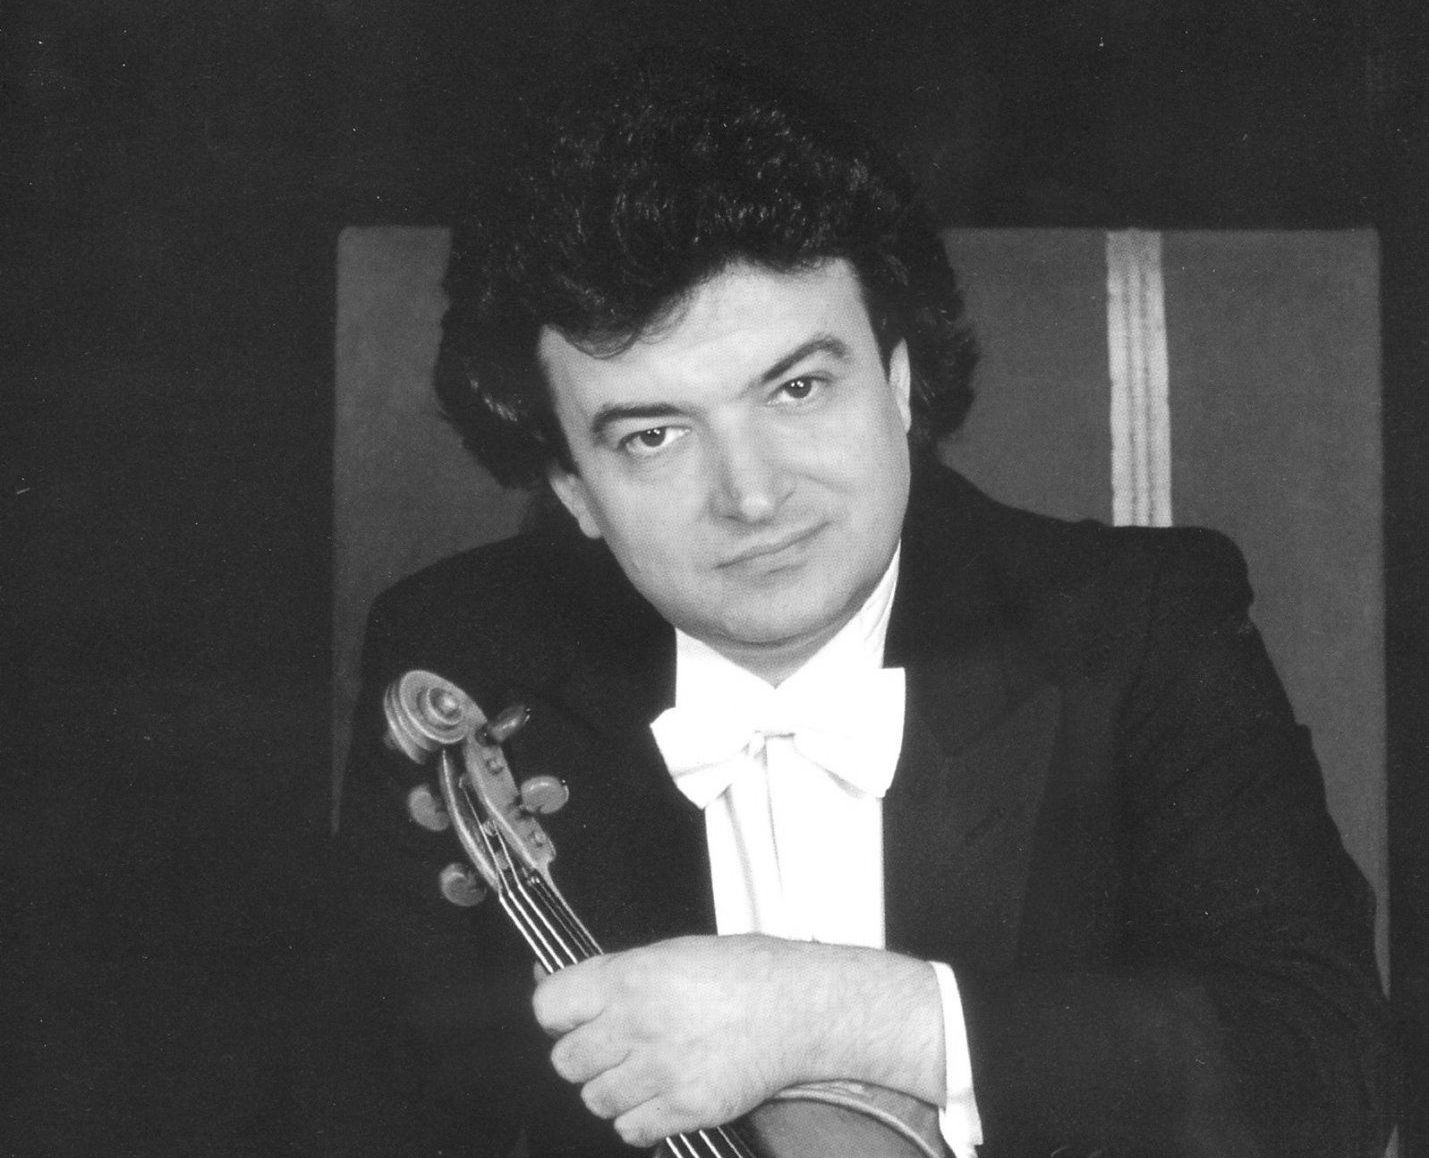 Doliu la Galaţi! S-a stins din viaţă remarcabilul violonist Eugen Sârbu